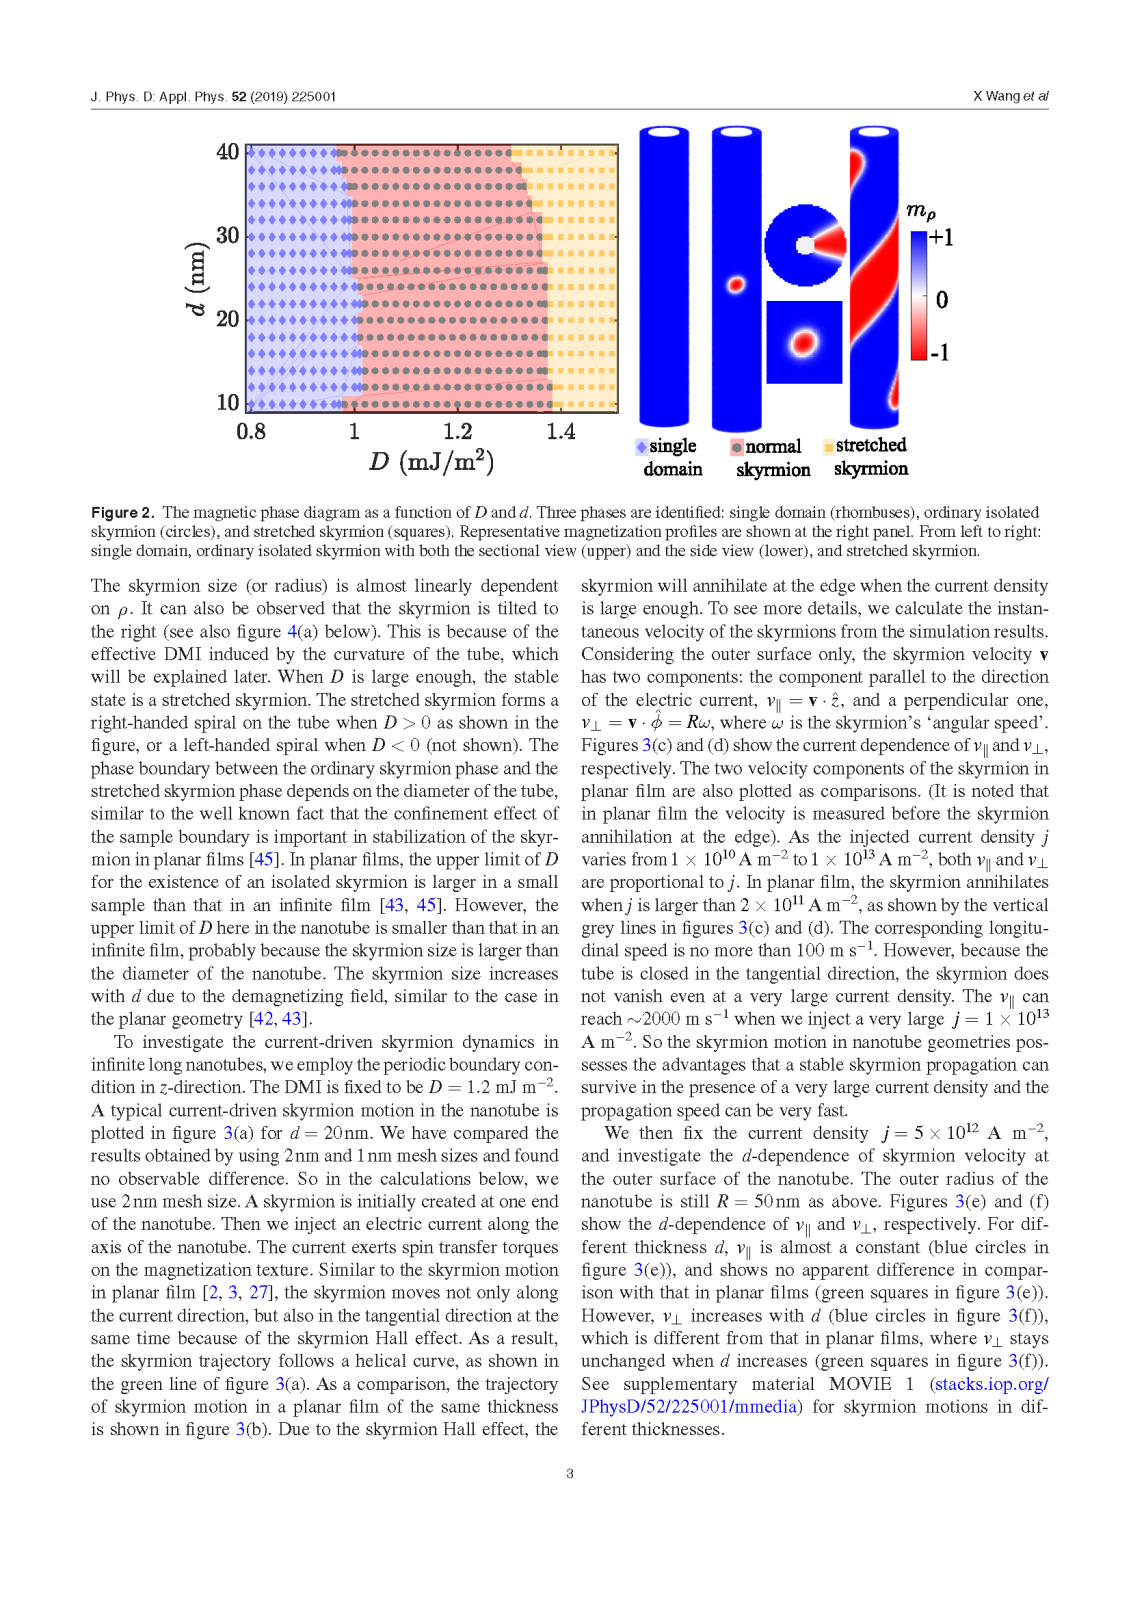 J. Phys. D Appl. Phys. 52, 225001 (2019)_页面_4.png